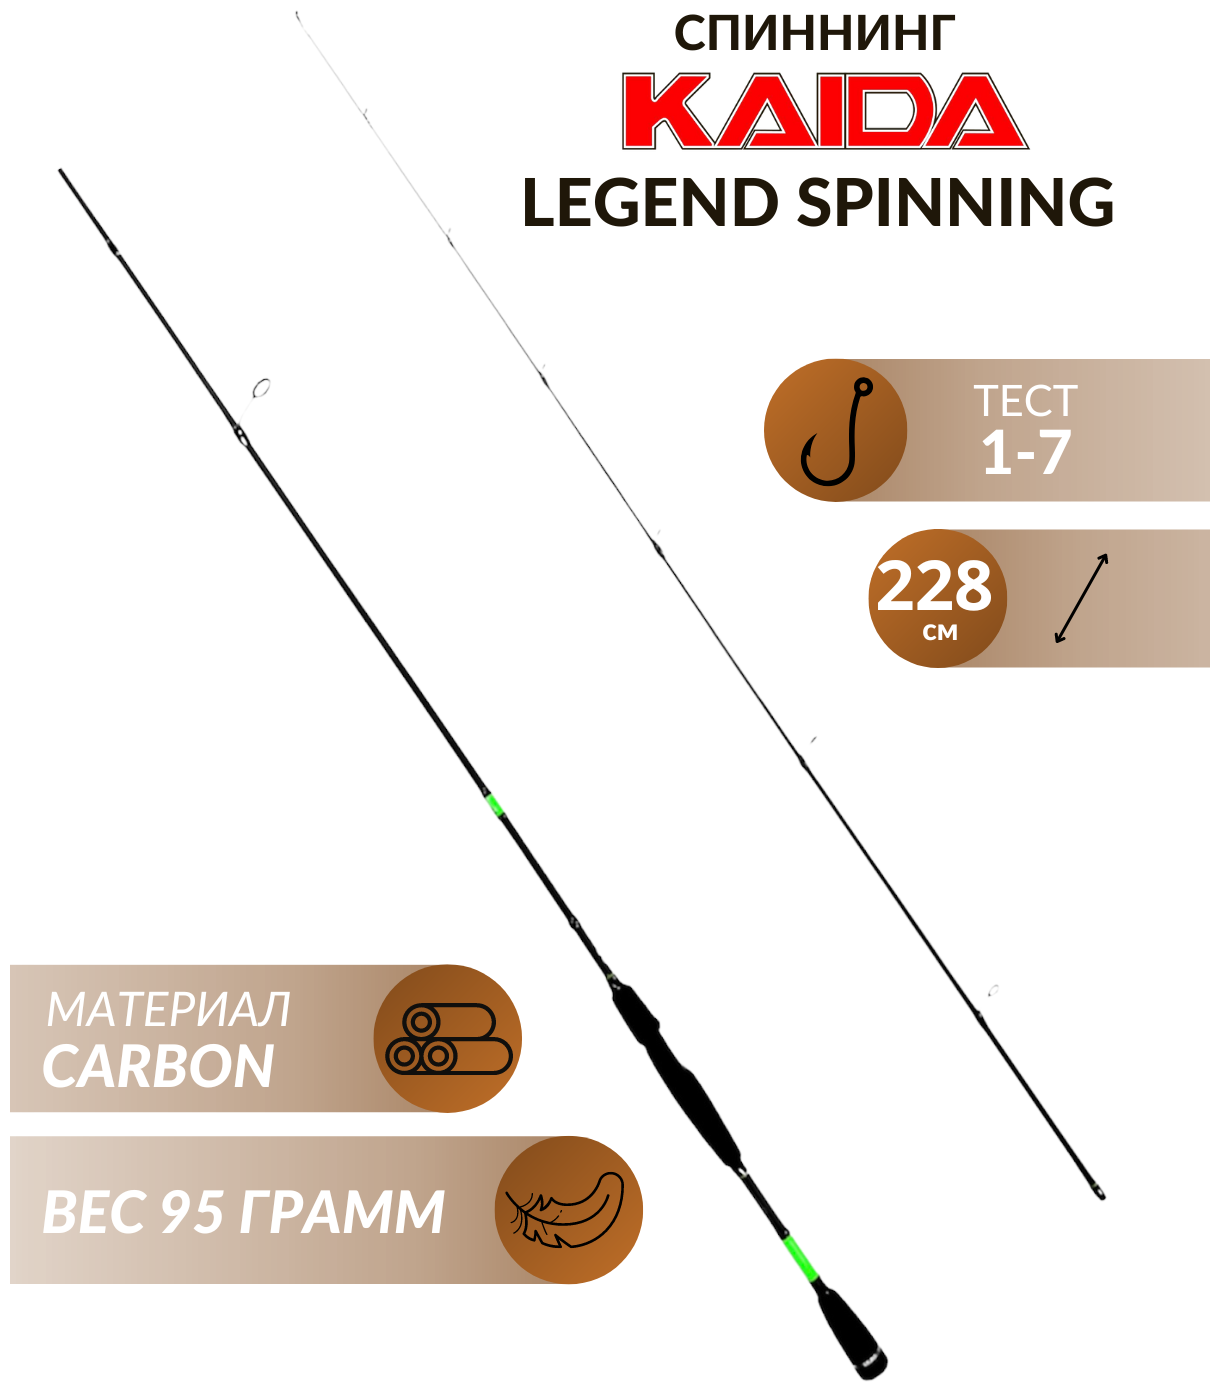 Спиннинг Kaida Legend Spinning 228 см тест 1-7 грамм спиннинг ультралайт, окуня, головля, форель, хищника, микроджига, твичинга